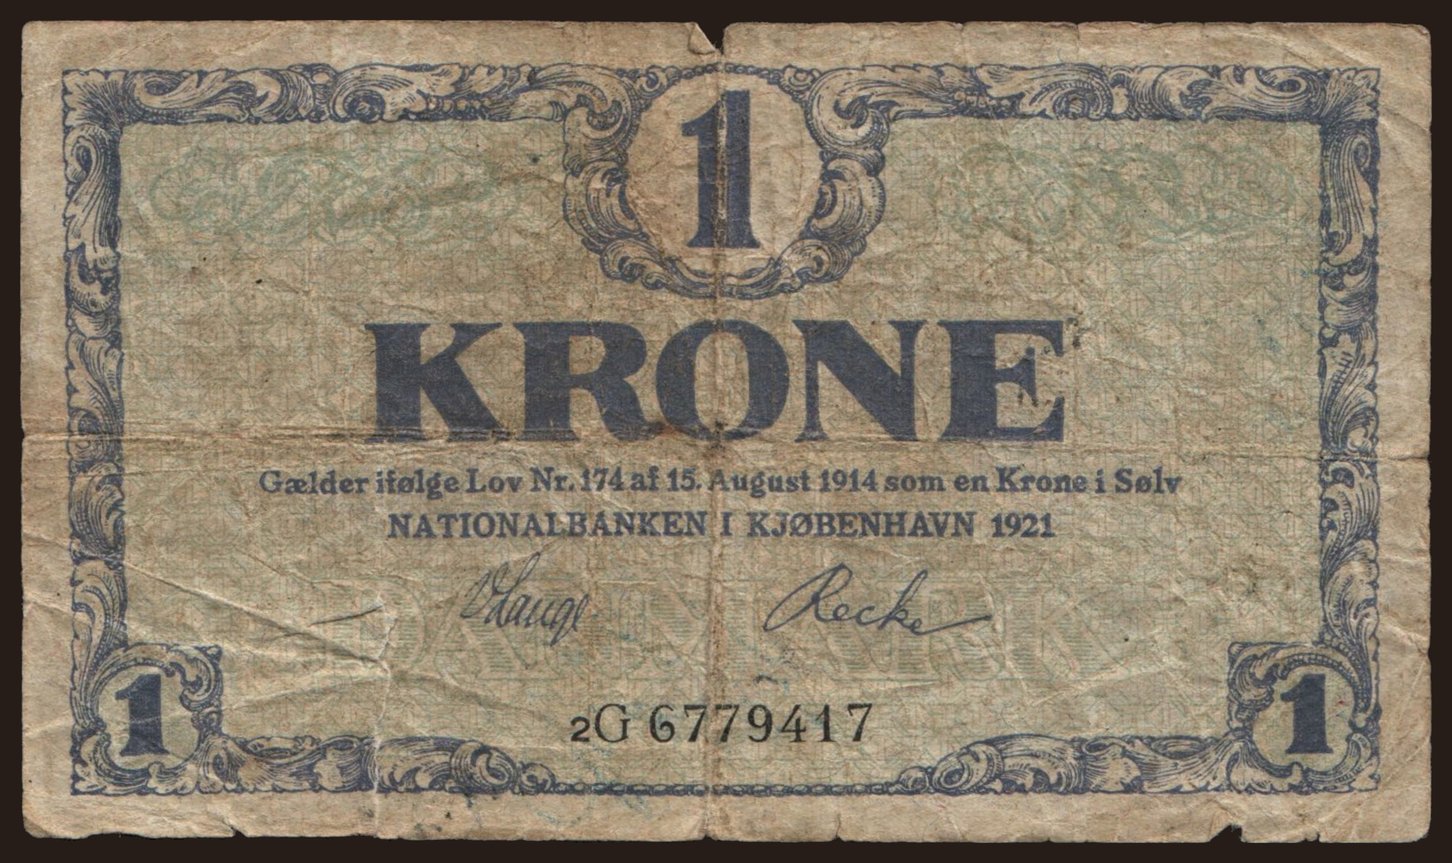 1 krone, 1921